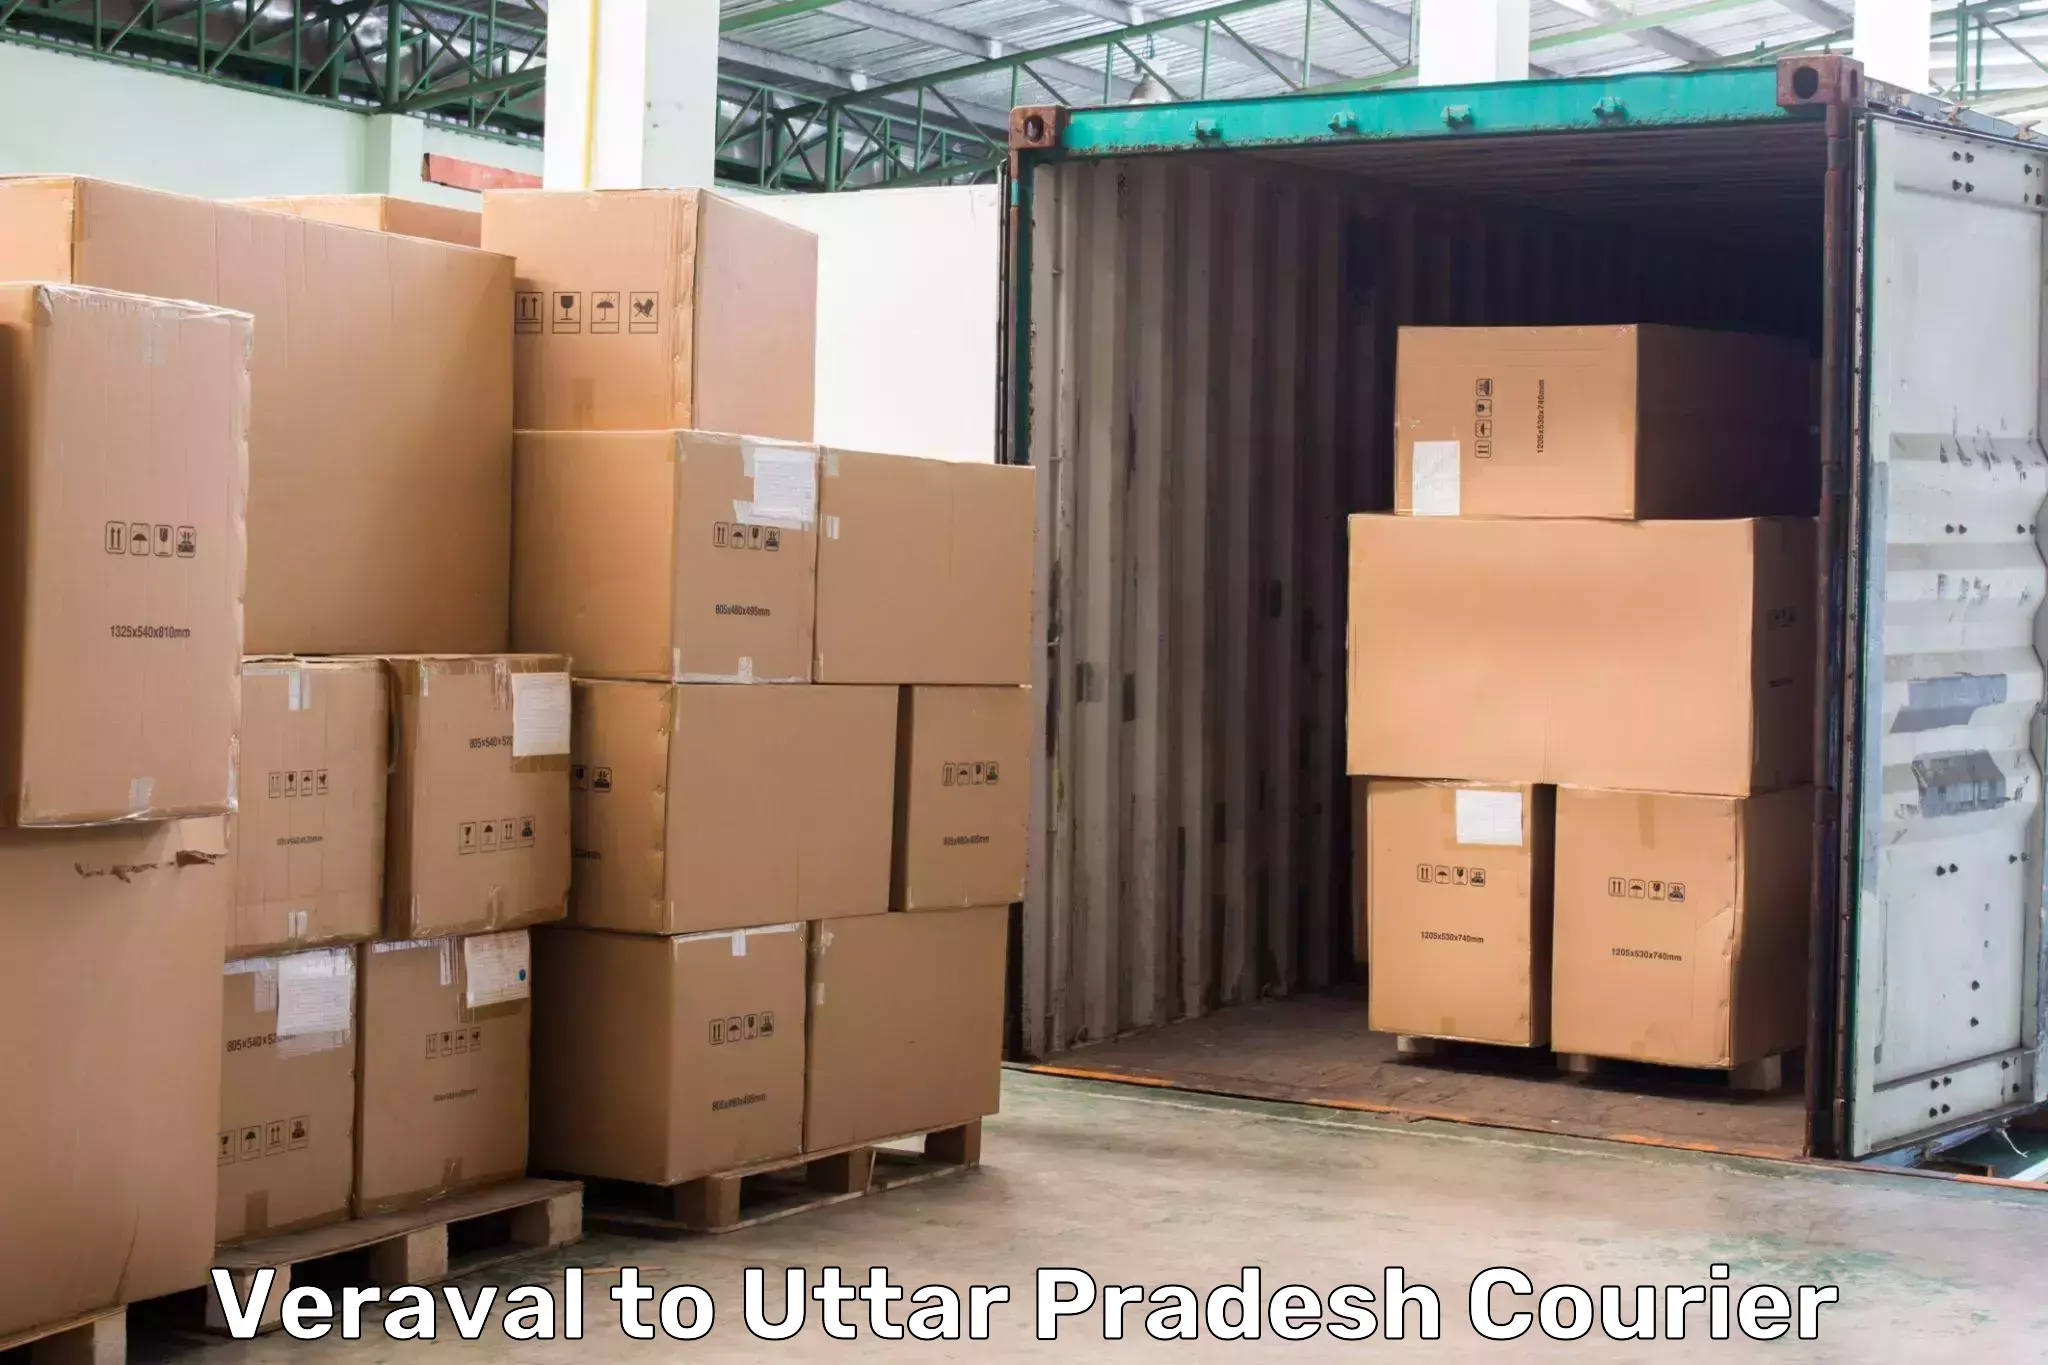 Modern delivery technologies Veraval to Gauri Bazar